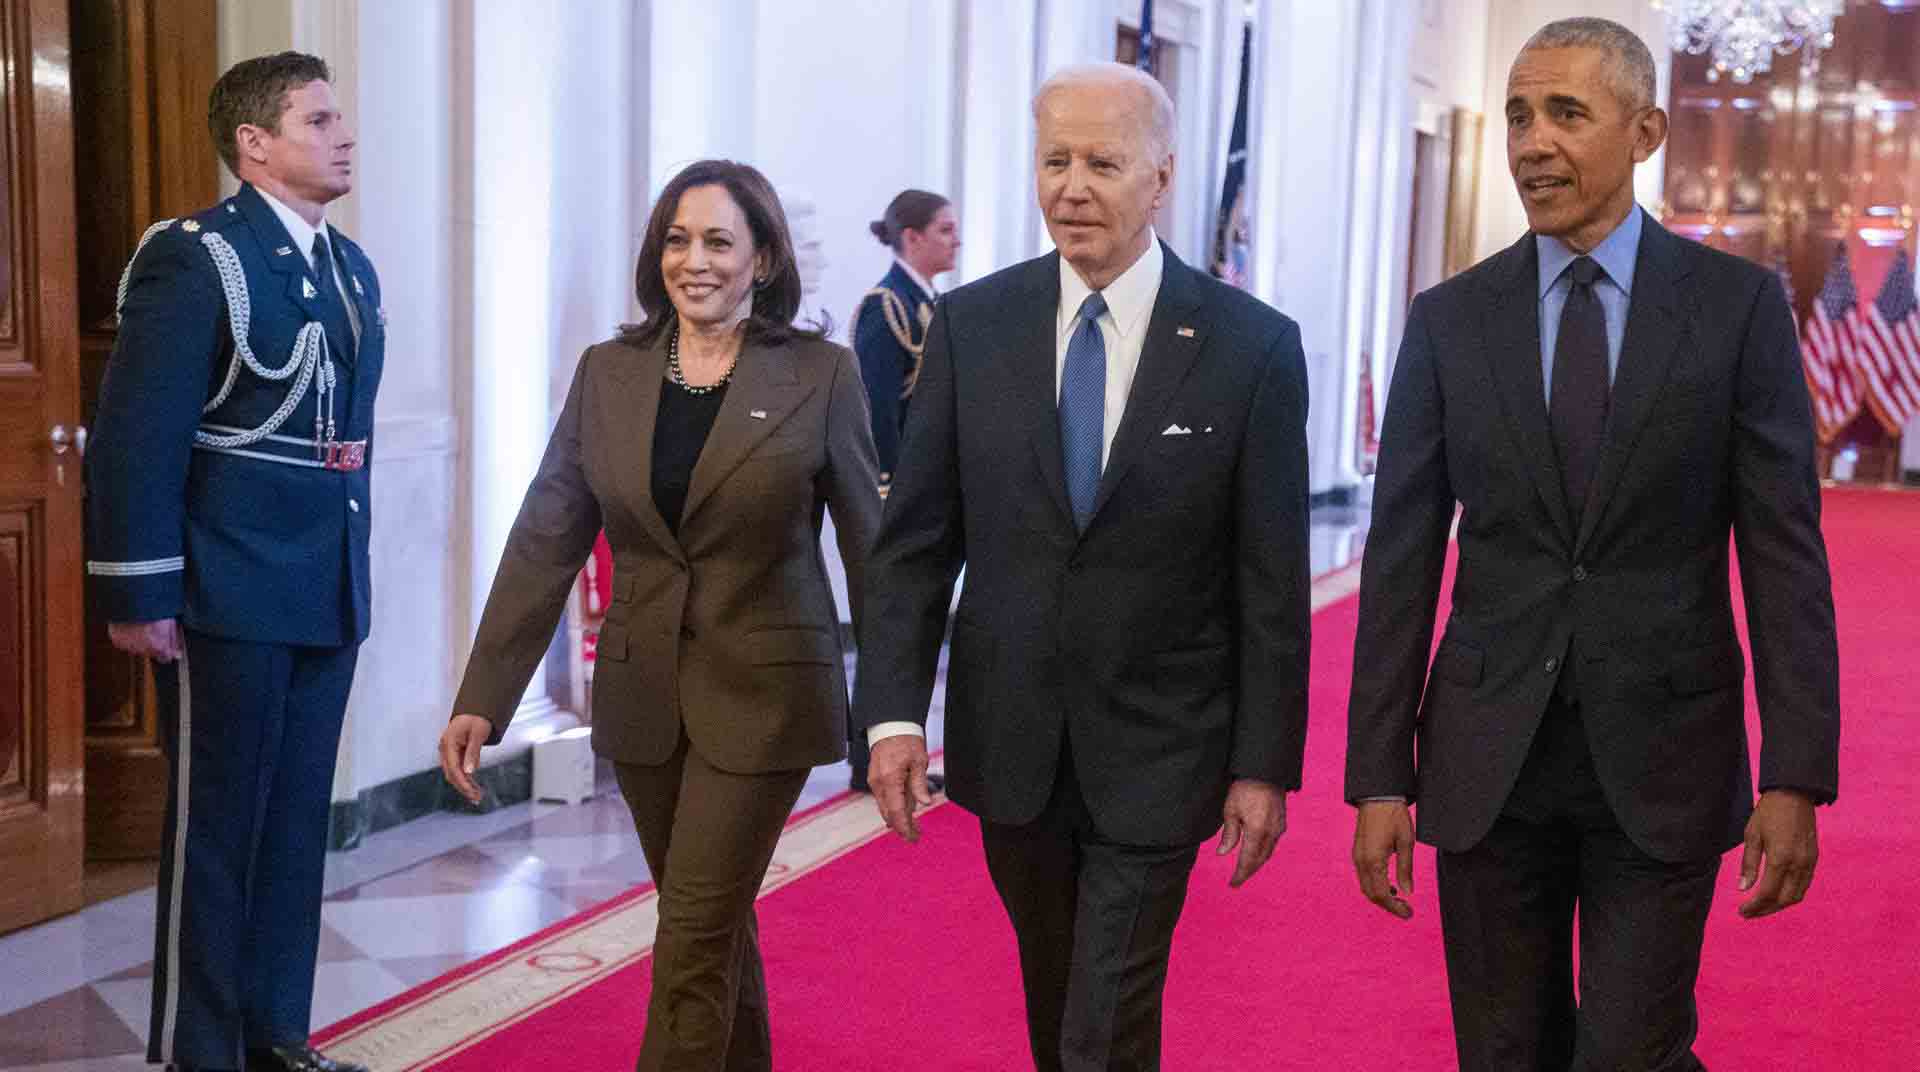 La vicepresidenta estadounidense, Kamala Harris; el presidente de Estados Unidos, Joe Biden (c); y el expresidente estadounidense Barack Obama (d) fueron registrados este martes a su llegada al salón Este de la Casa Blanca. Foto: EFE